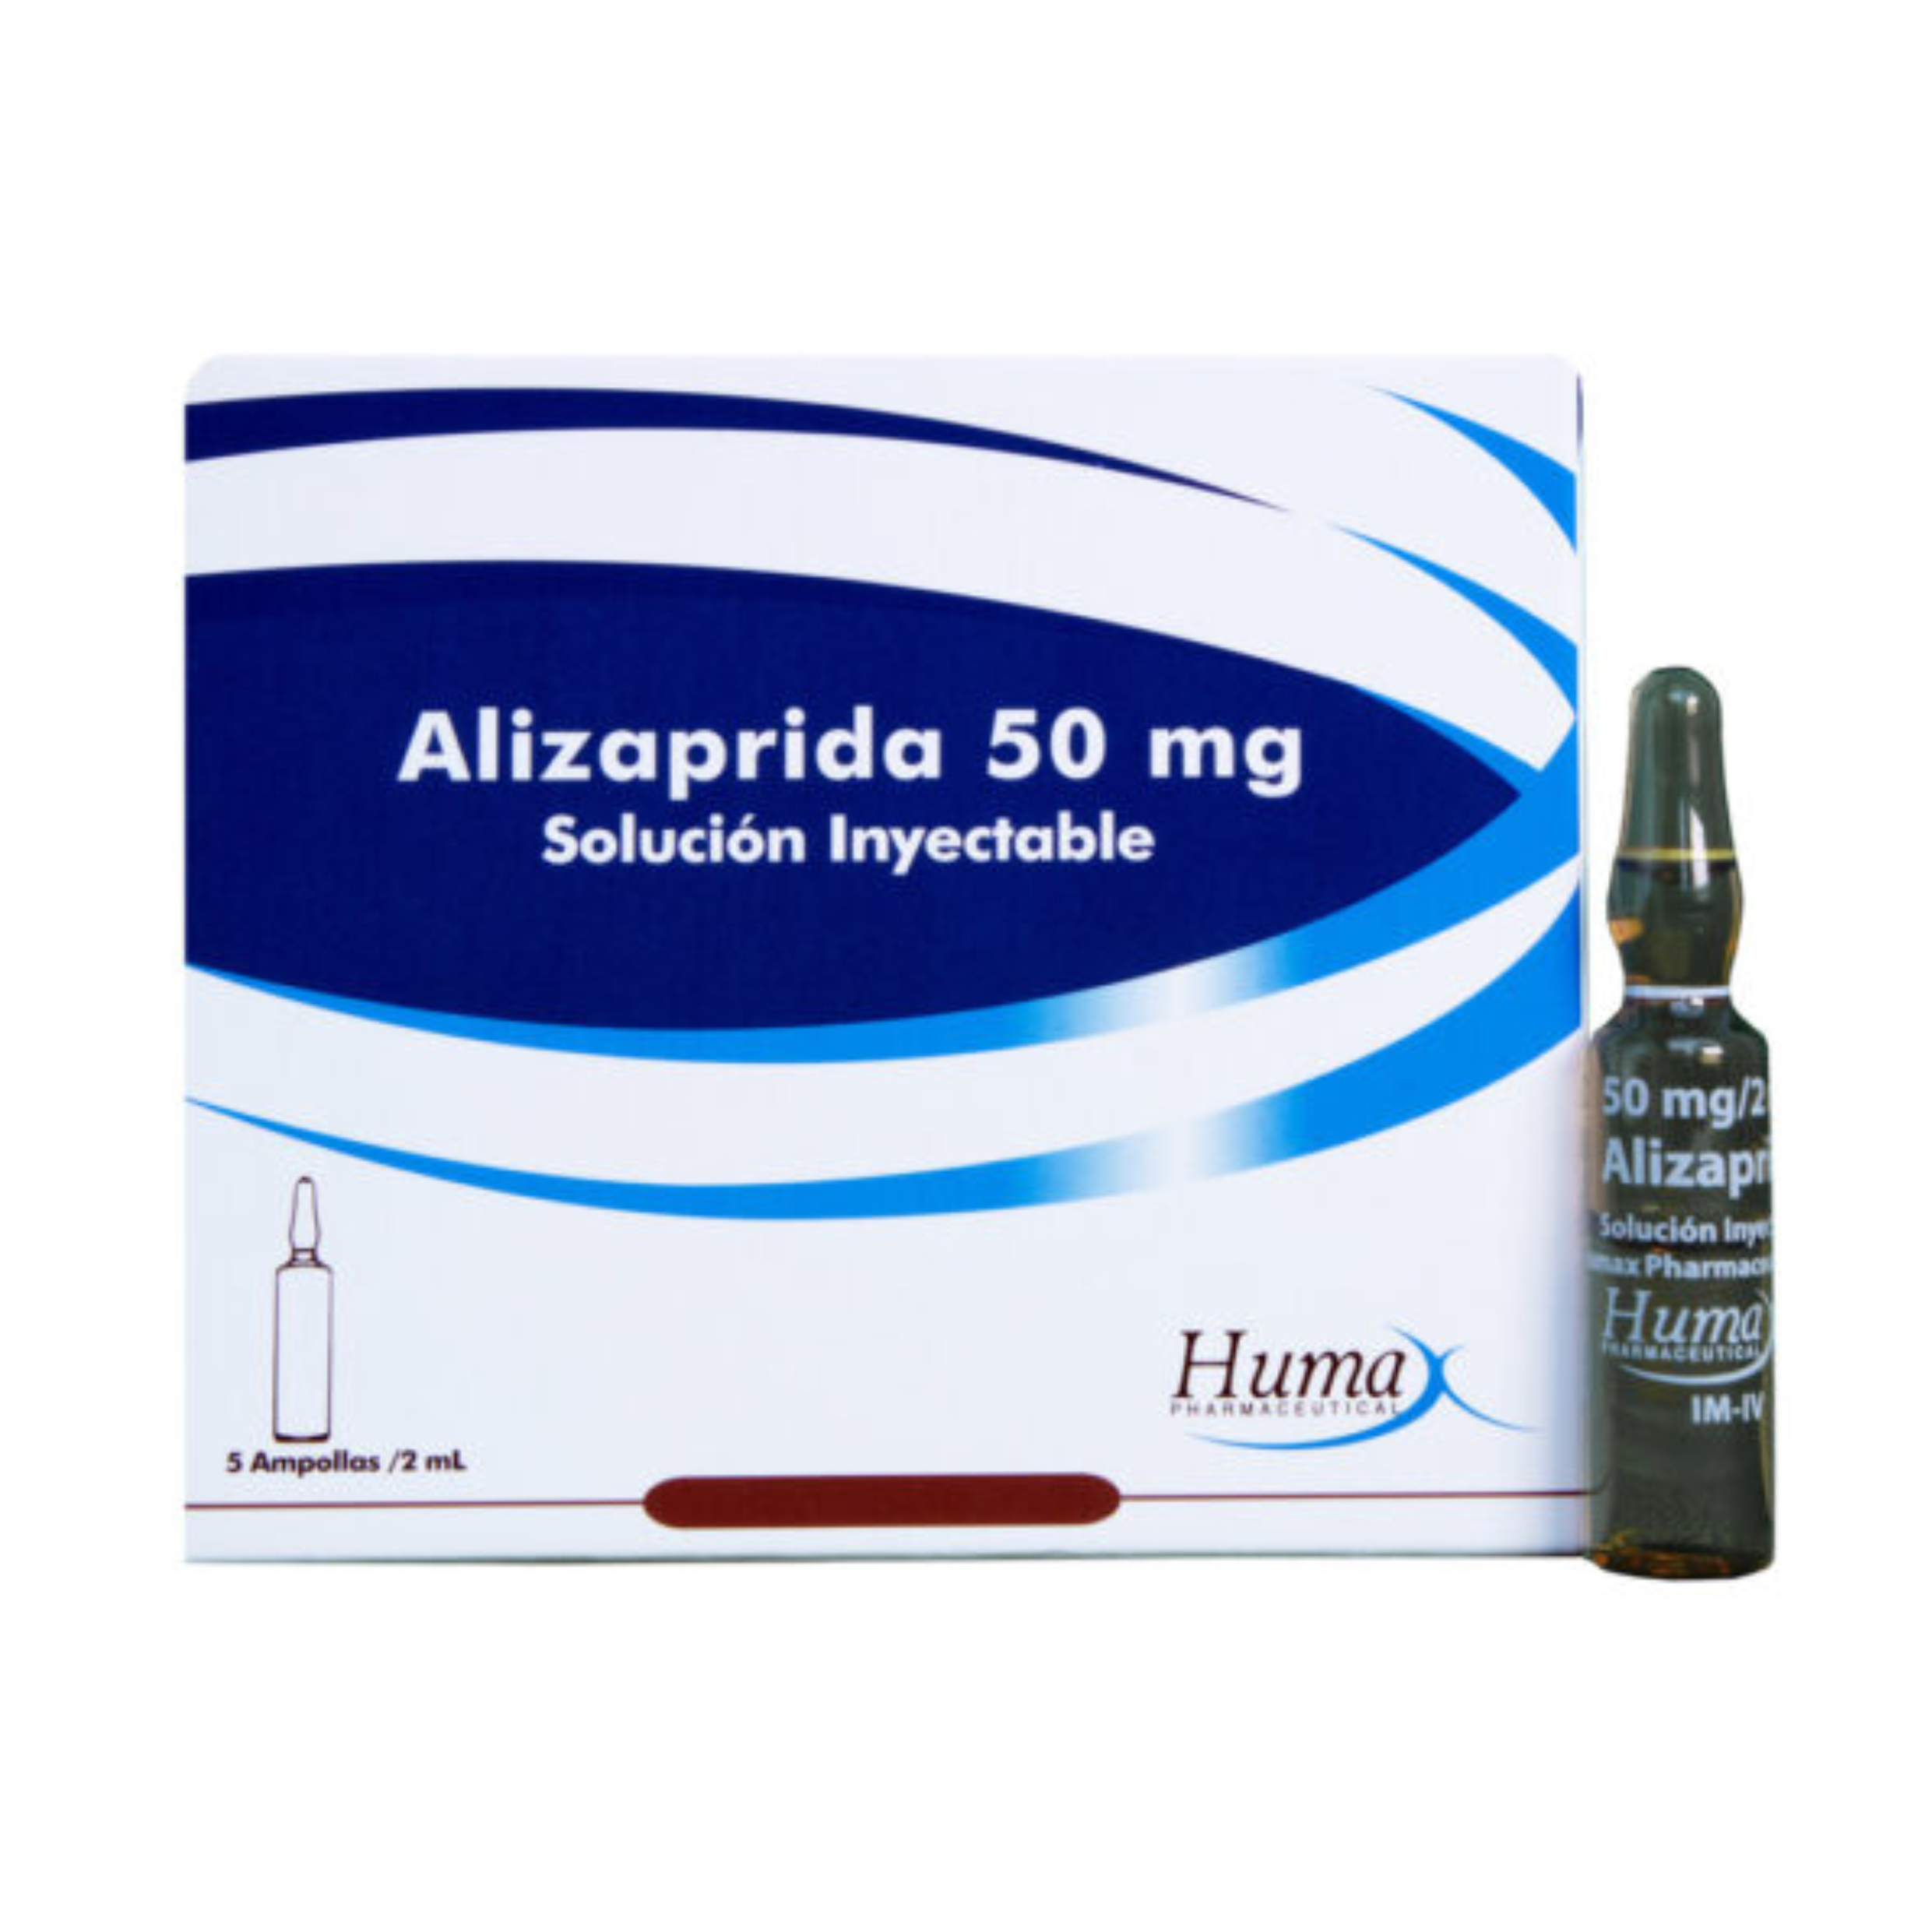 Alizaprida 50 mg solución Inyectable Caja x 5 ampollas / 2 mL